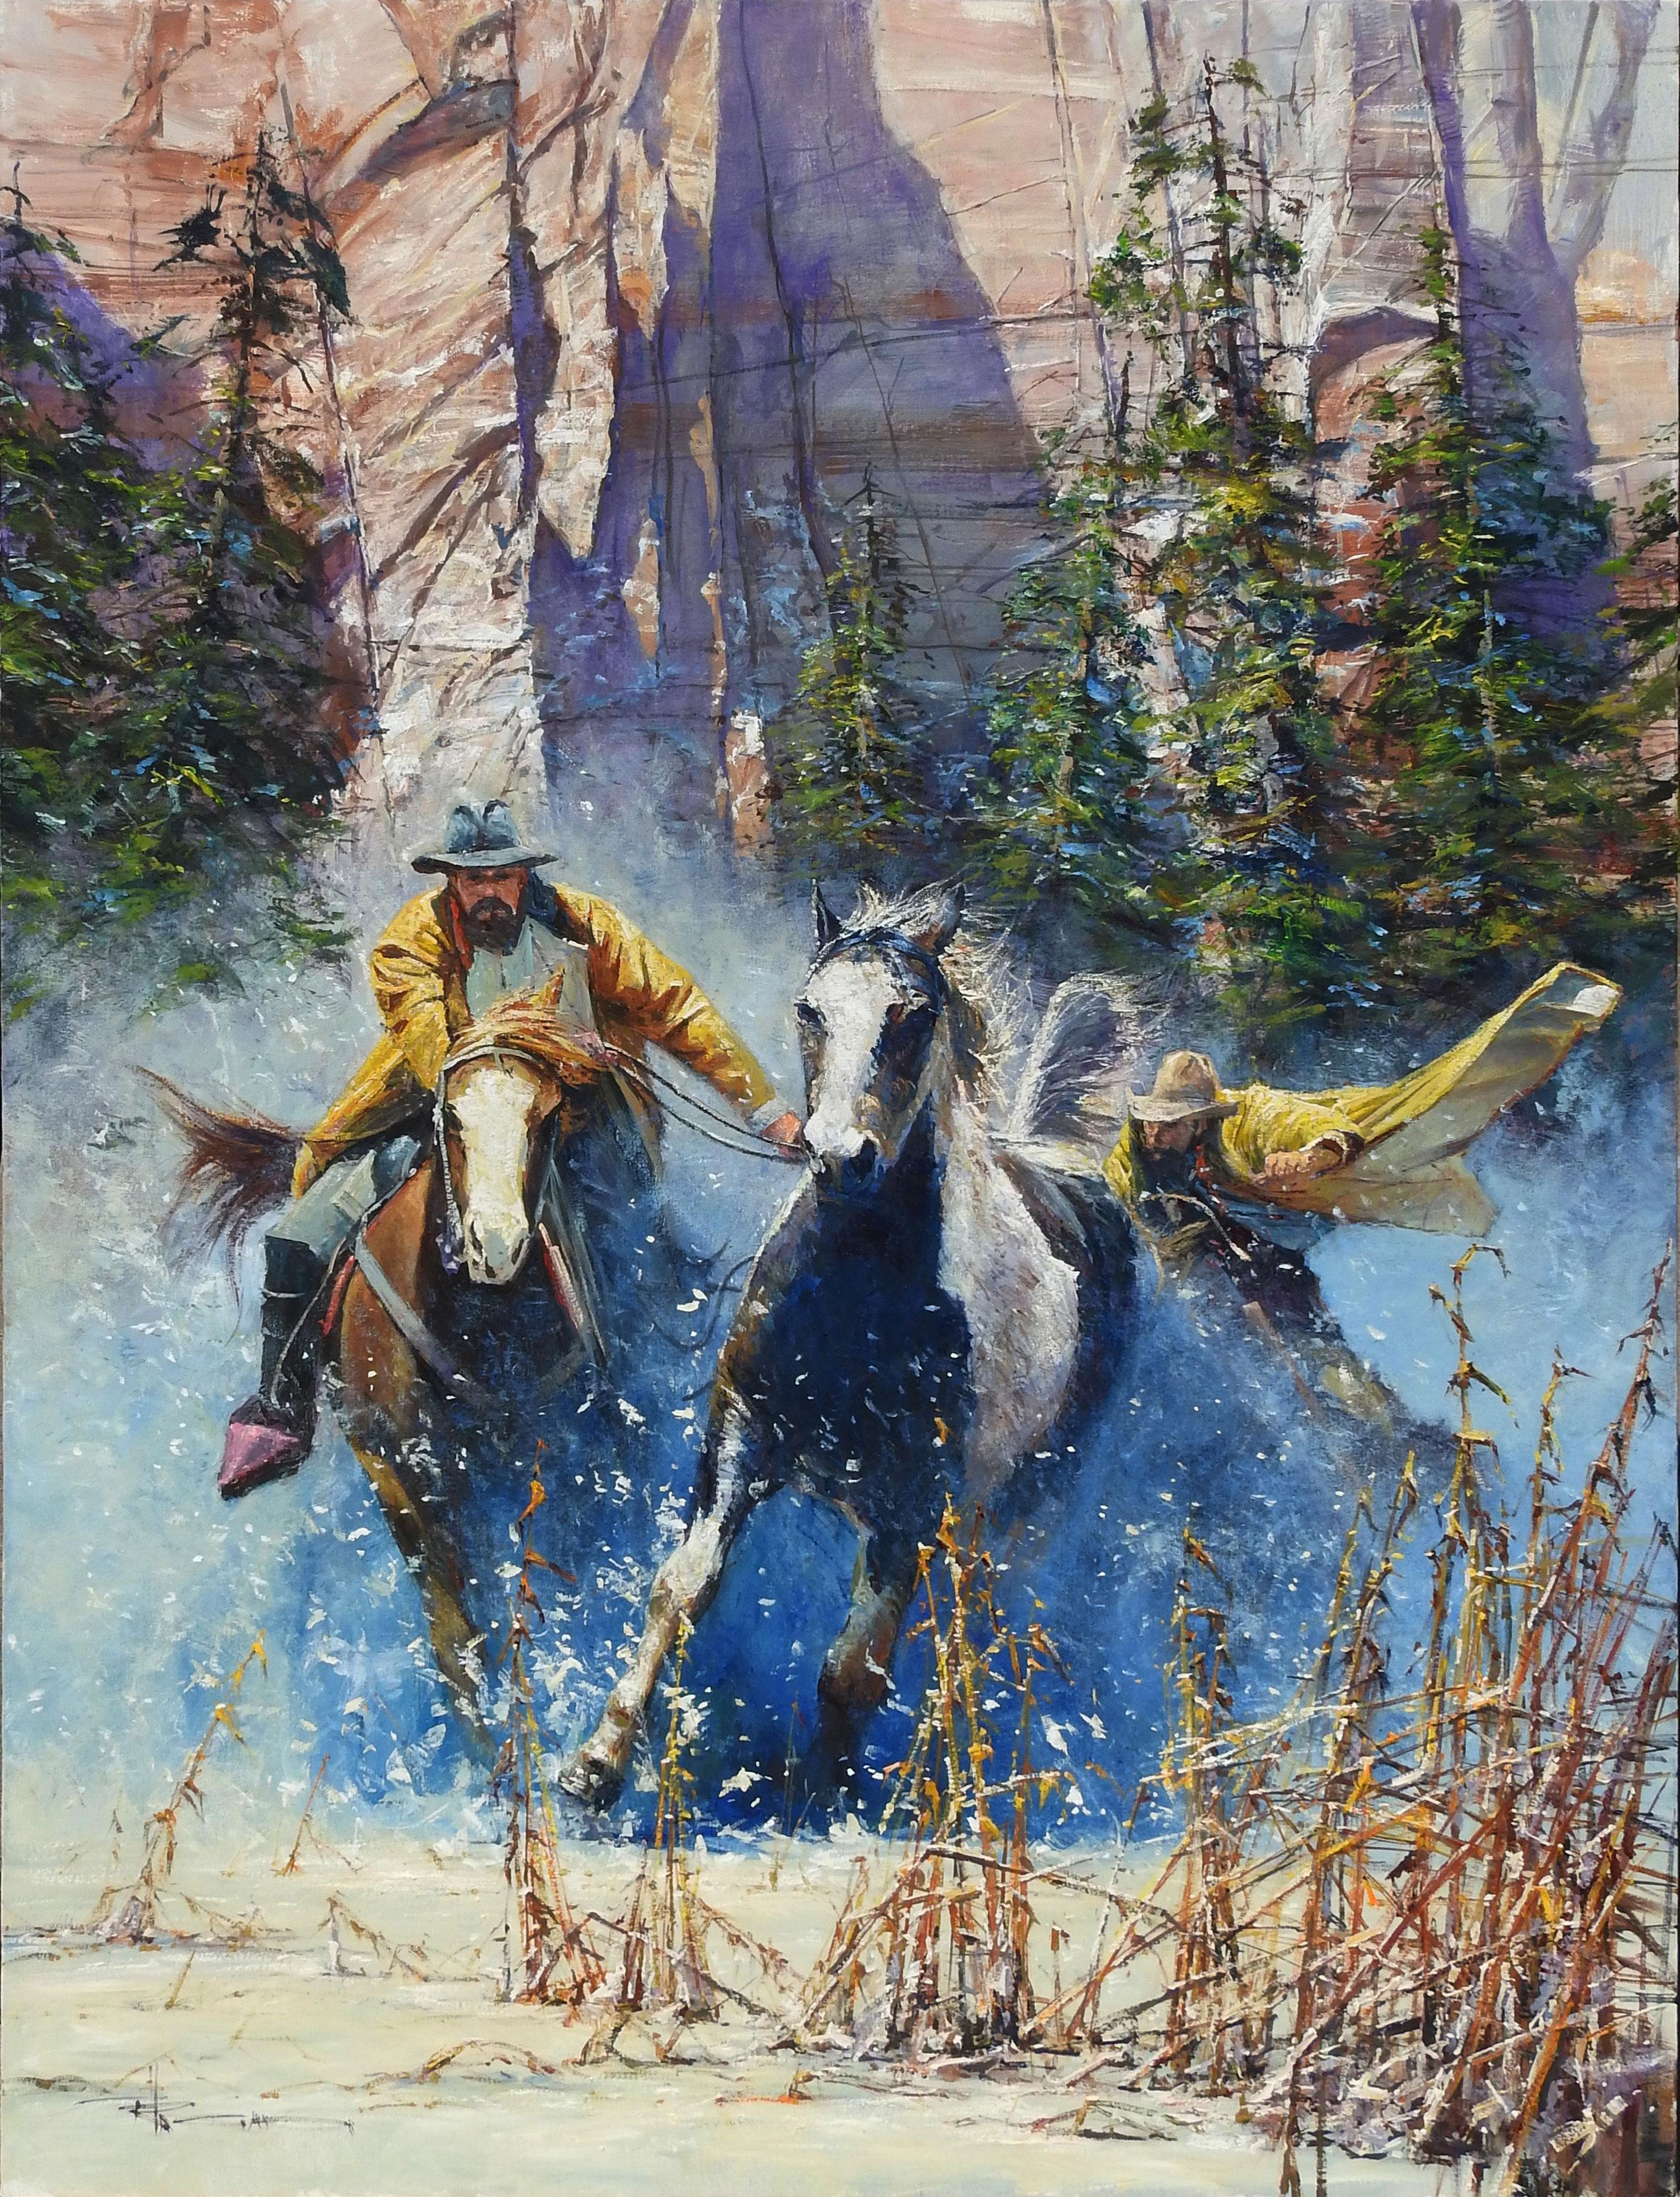 "The Runaway" von Robert Hagan ist ein Original Öl auf Leinwand und misst 68x48.  
Dieses fesselnde Stück zeigt zwei Cowboys auf Pferden in gelben Slickern, die durch die Canyons galoppieren und Schnee aufwirbeln, um einen schwarz-weißen Mustang zu